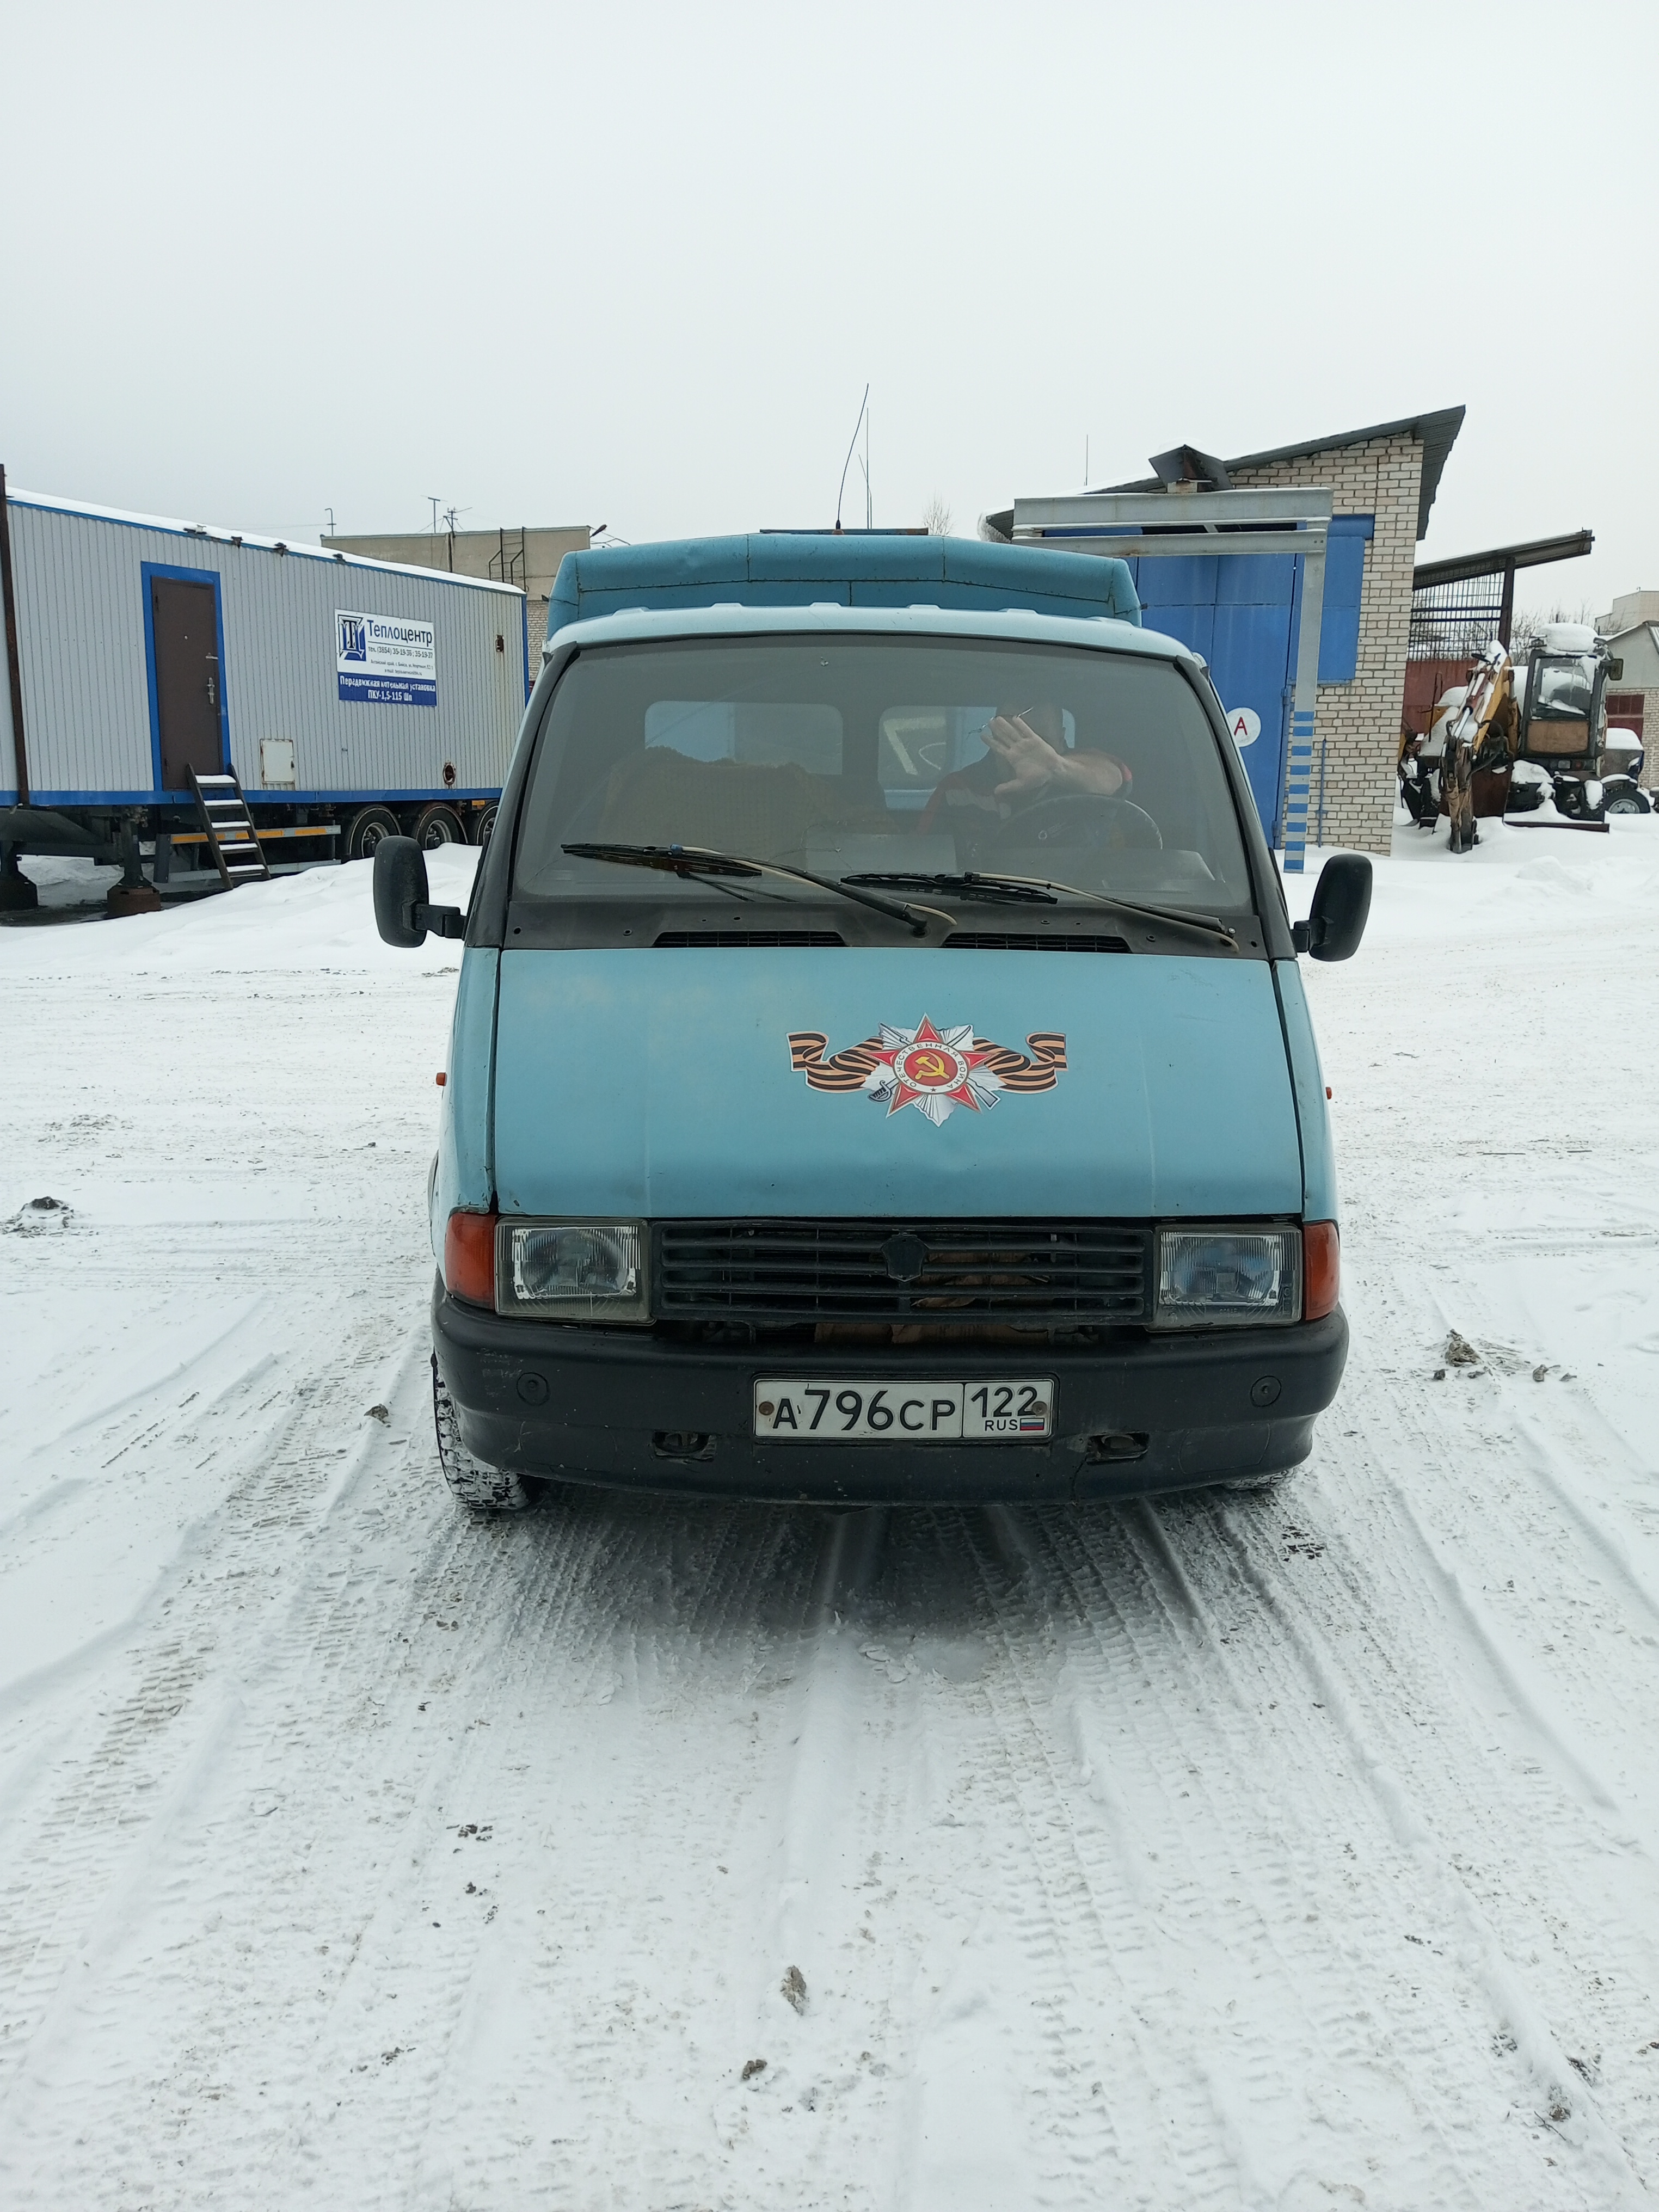 213479-Автомобиль ГАЗ-3302 (Грузовой; переоборудован в фургон 28) гос. номер А796СР122 , год выпуска 1992 -0